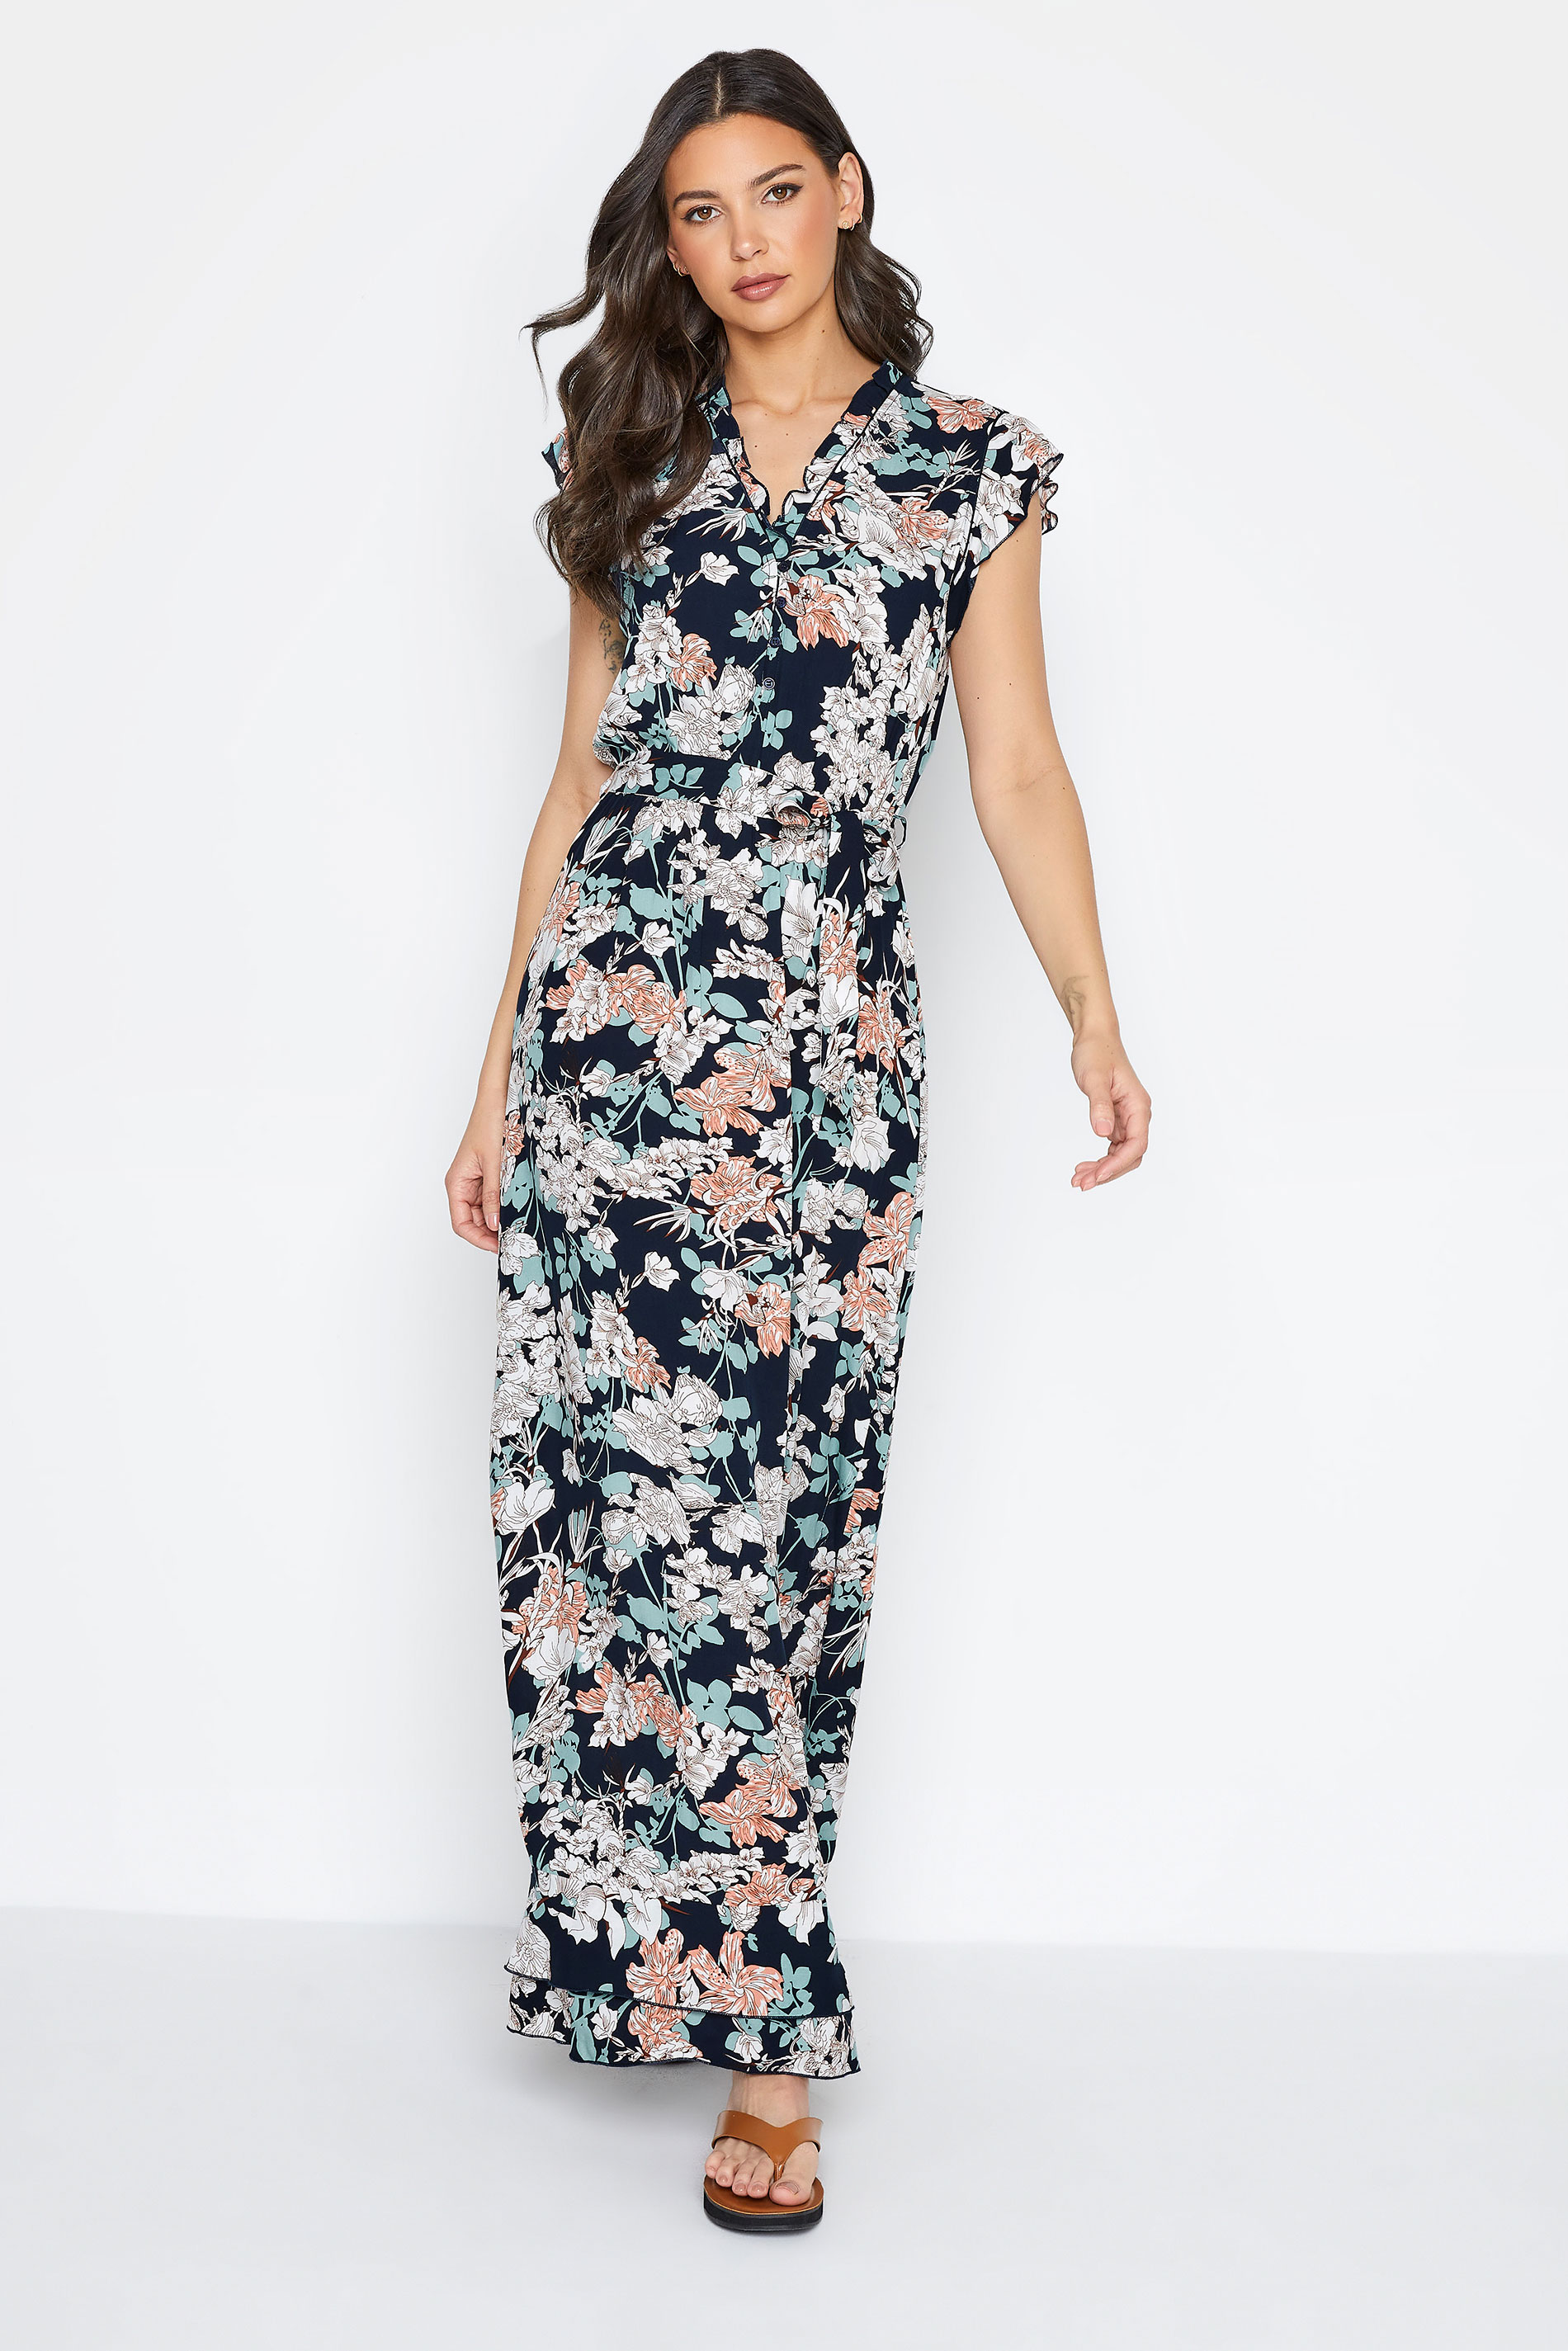 LTS Tall Women's Navy Blue Floral Frill Maxi Dress | Long Tall Sally 1